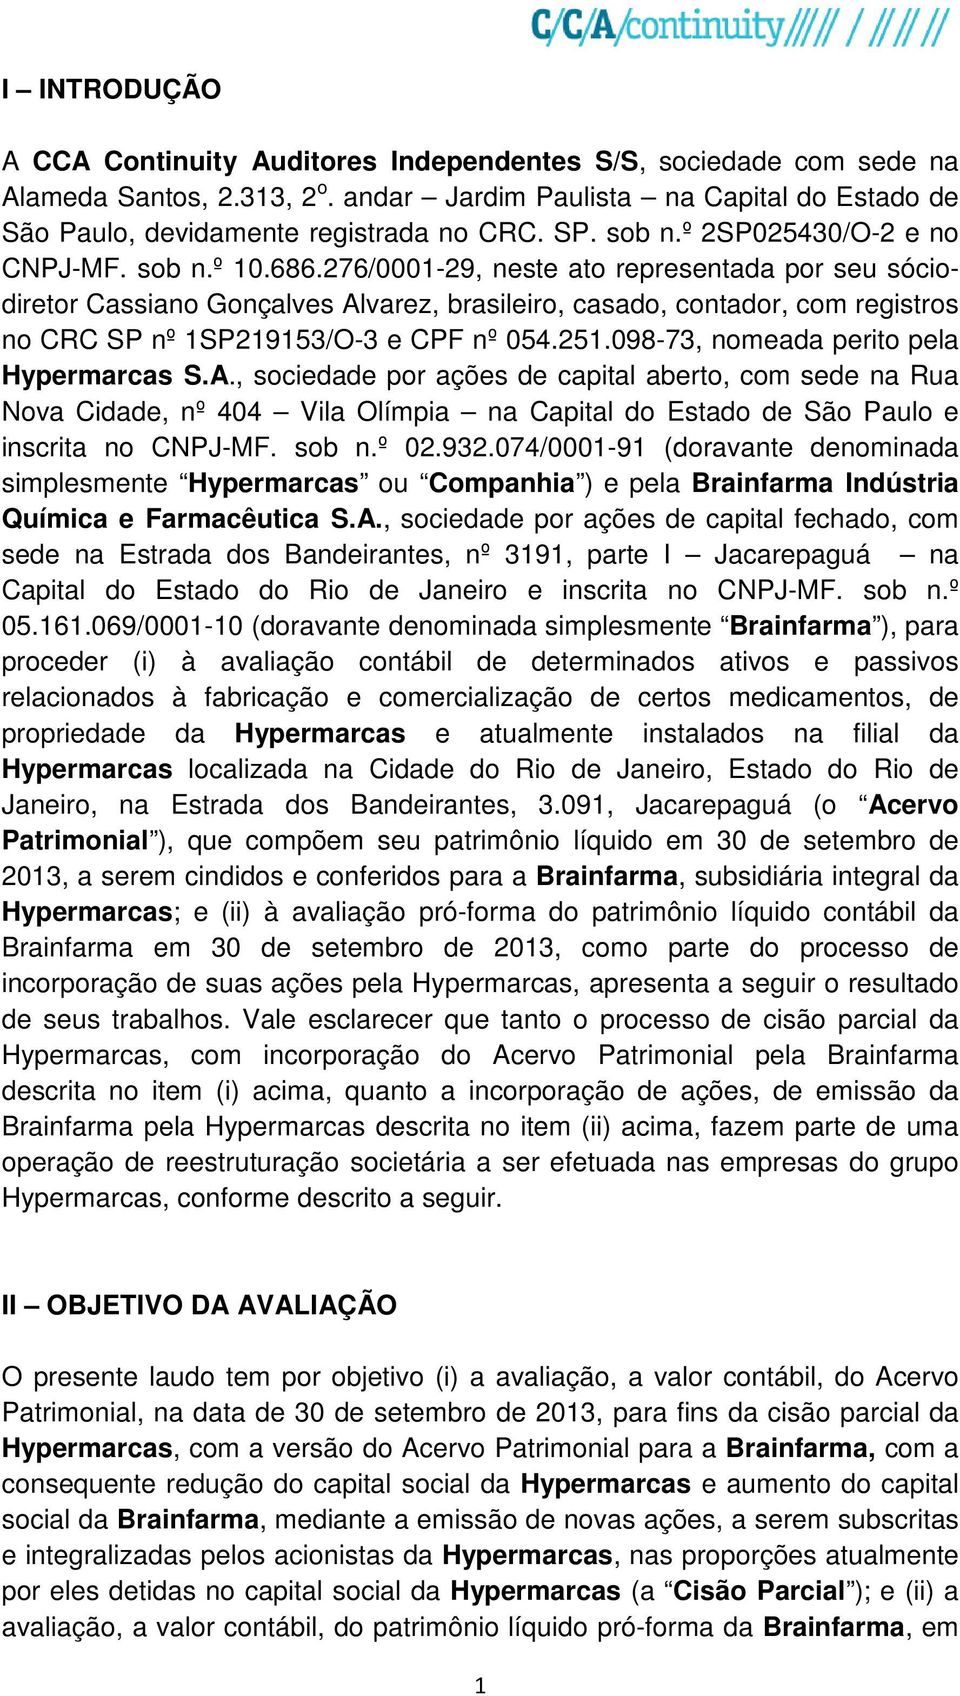 276/0001-29, neste ato representada por seu sóciodiretor Cassiano Gonçalves Alvarez, brasileiro, casado, contador, com registros no CRC SP nº 1SP219153/O-3 e CPF nº 054.251.